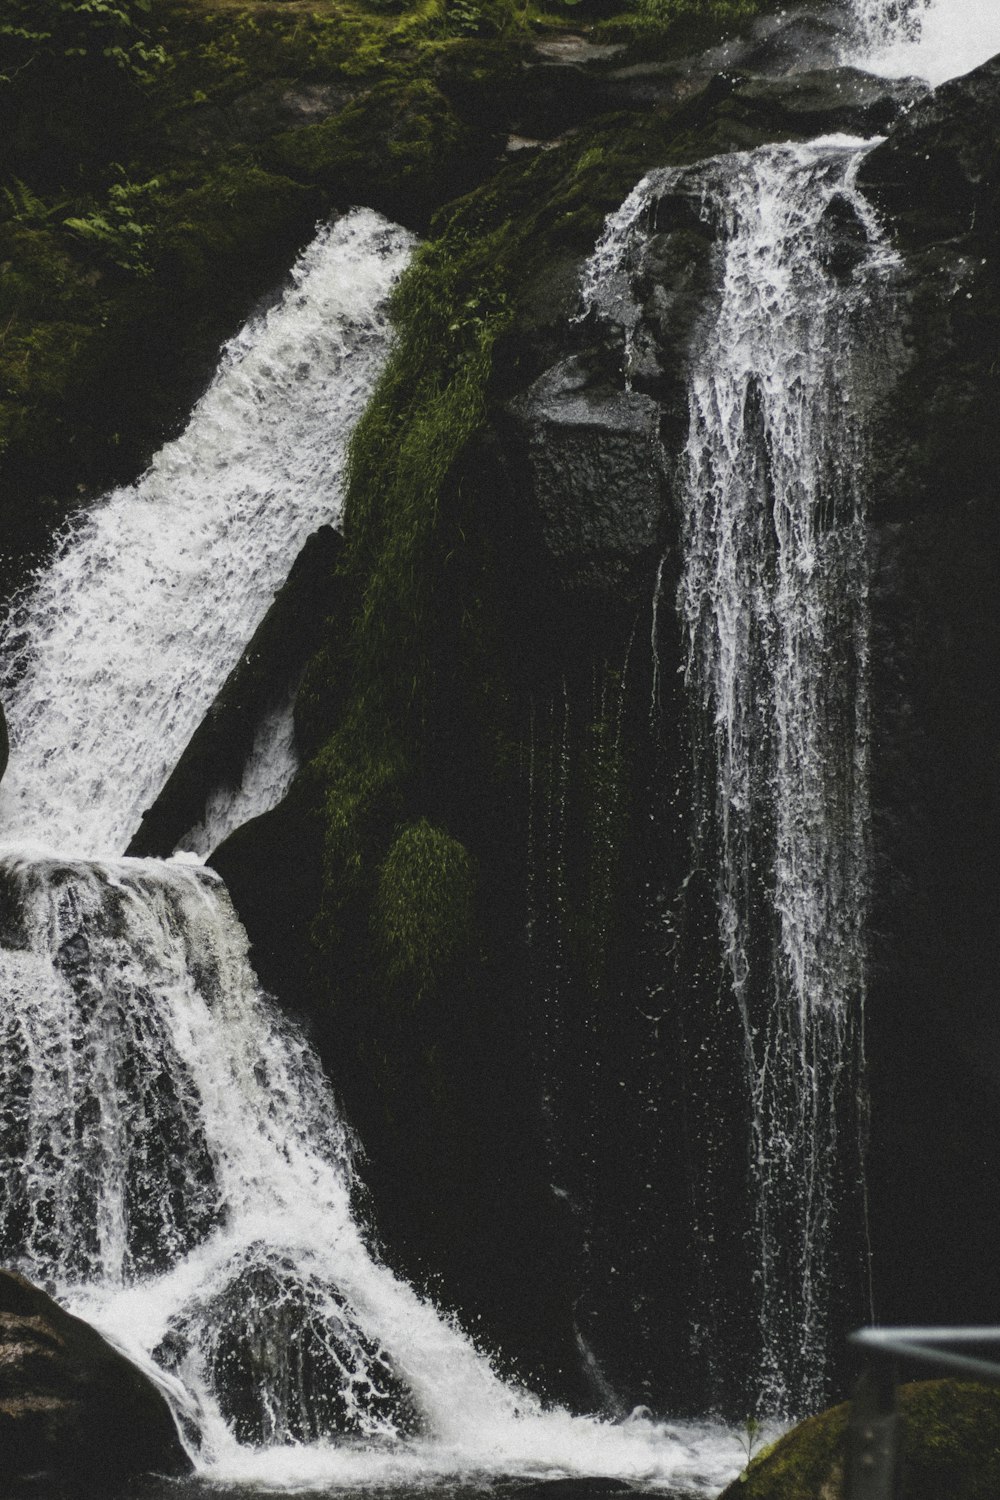 cachoeiras no meio de rochas cobertas de musgo verde